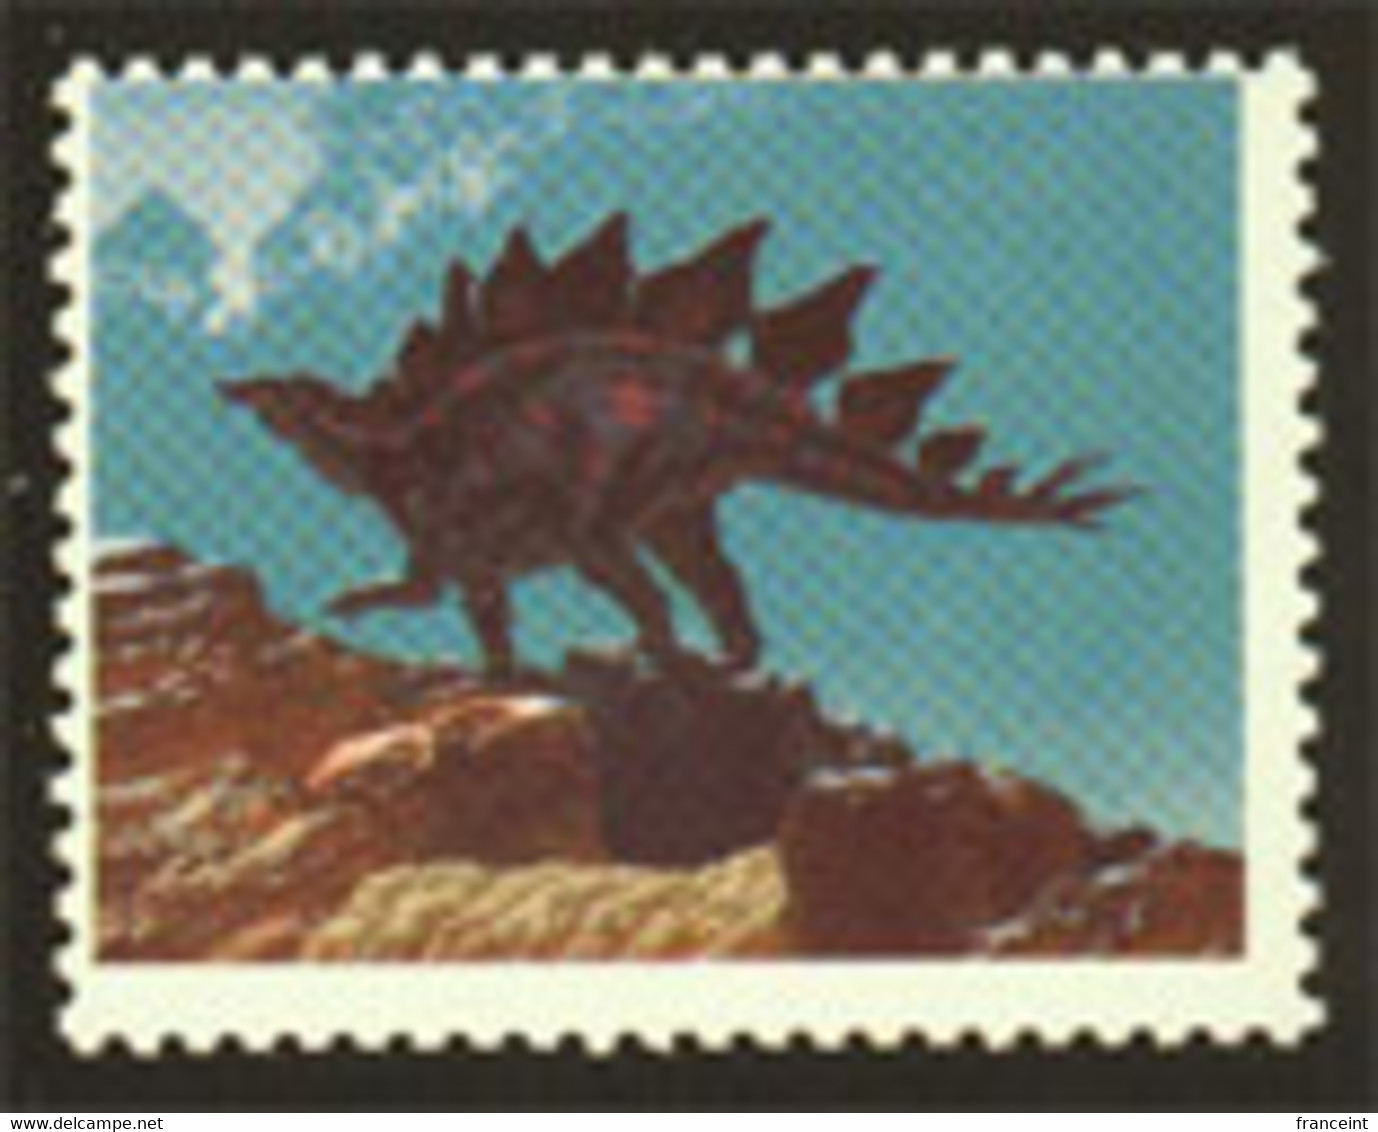 ETATS UNIS (1989a) Stégosaure. Scott No 2424. Superbe Variété: Sans La Couleur Noire. - Variétés, Erreurs & Curiosités